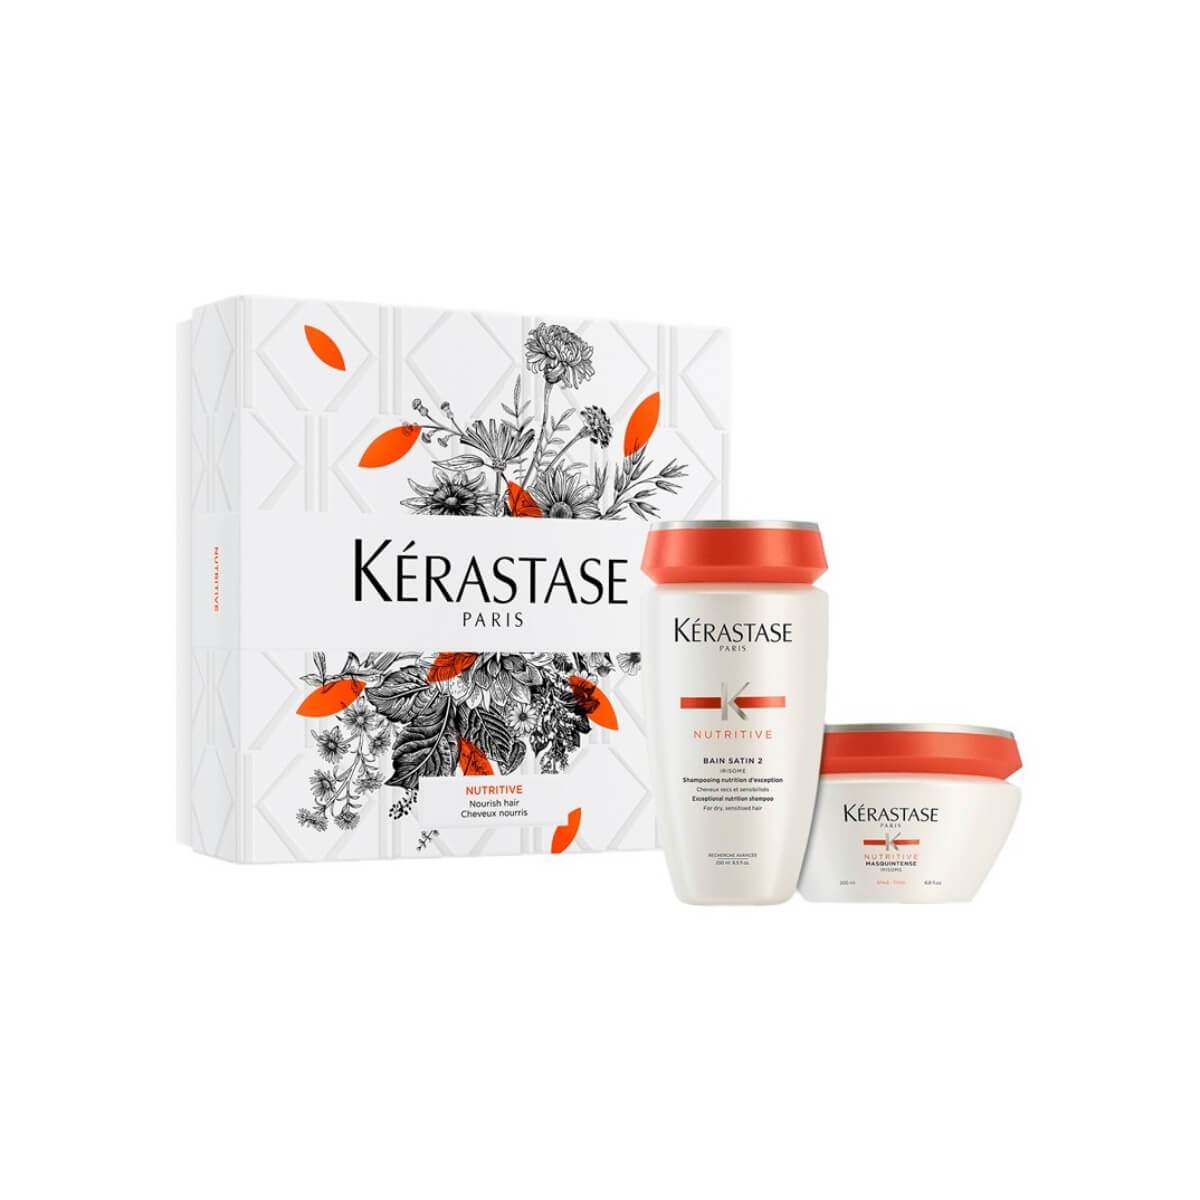 KERASTASE - NUTRITIVE Value - Shampoo + | BEAUTI.sa